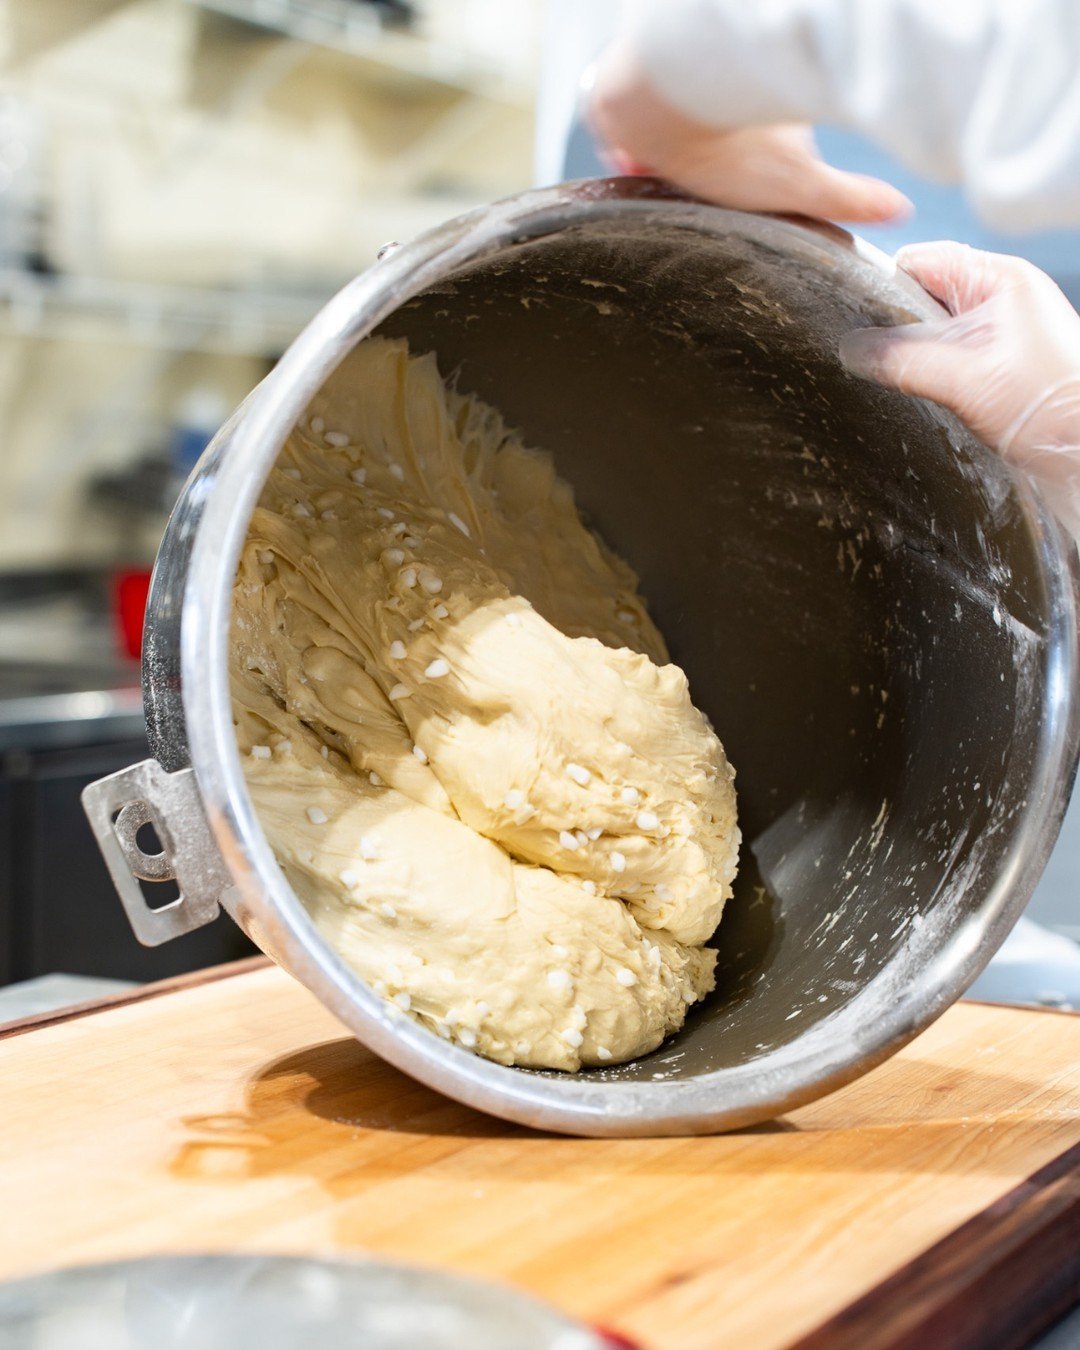 A little waffle dough photos for your Monday! 😎

#waffeestation #nchiddengems #visitjoco #claytonnc #smithfieldnc #visitnc #wafflelover